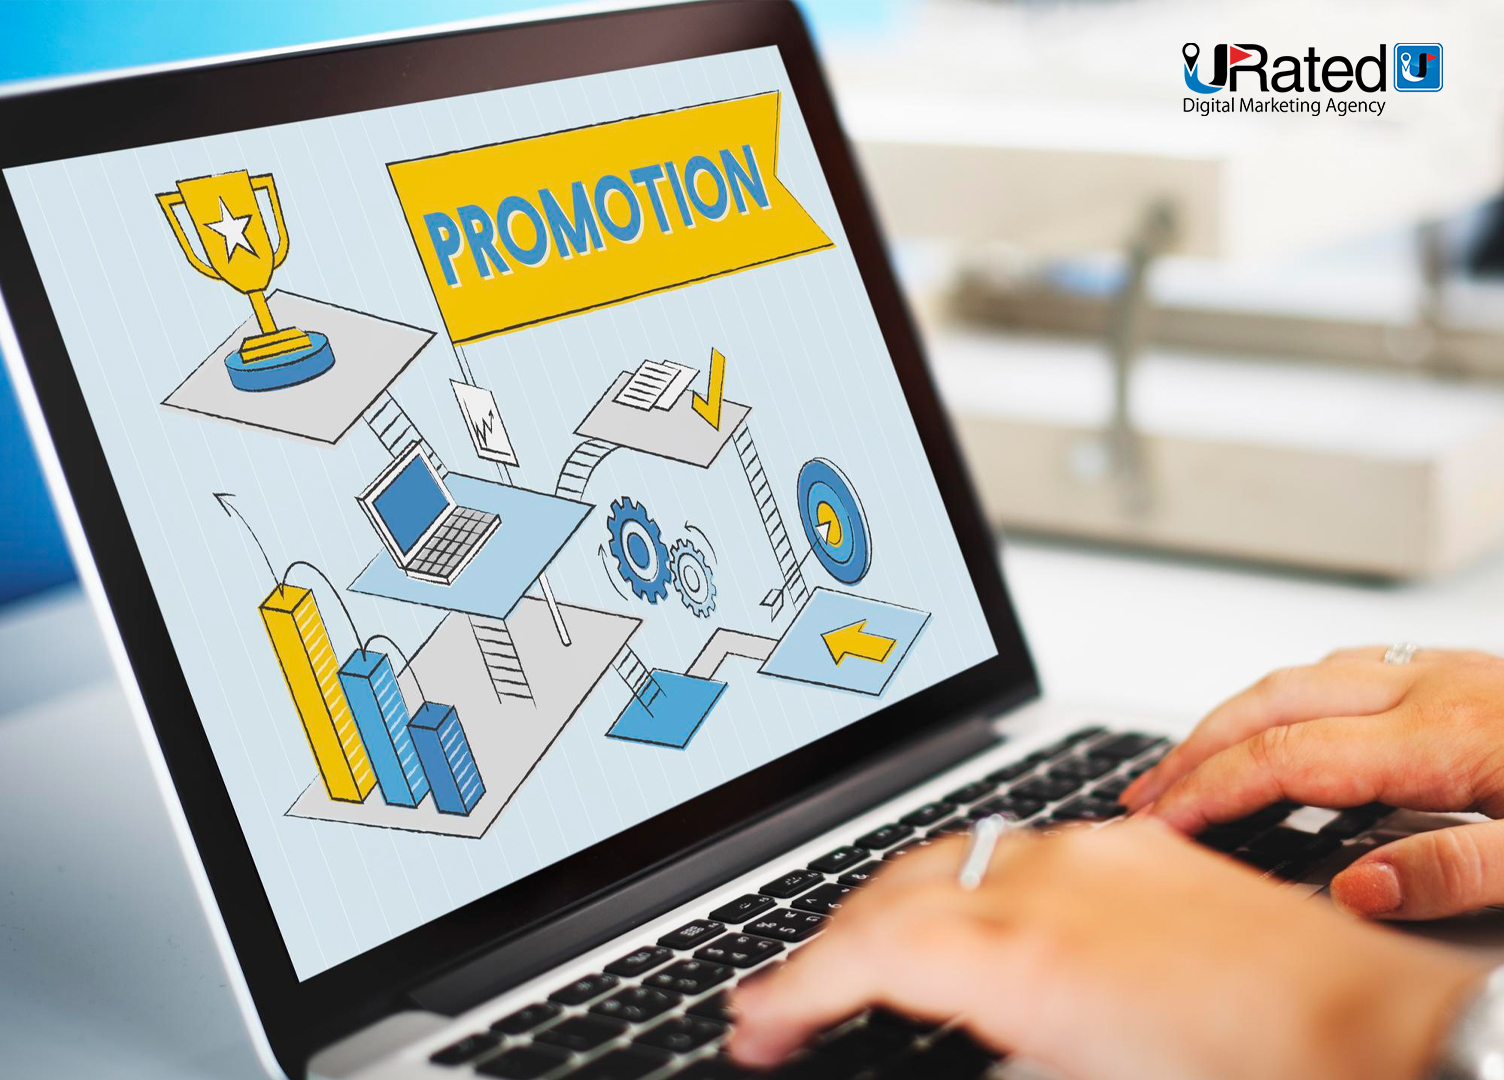 URated Digital Marketing Agency Online Advertising Strategies That Work